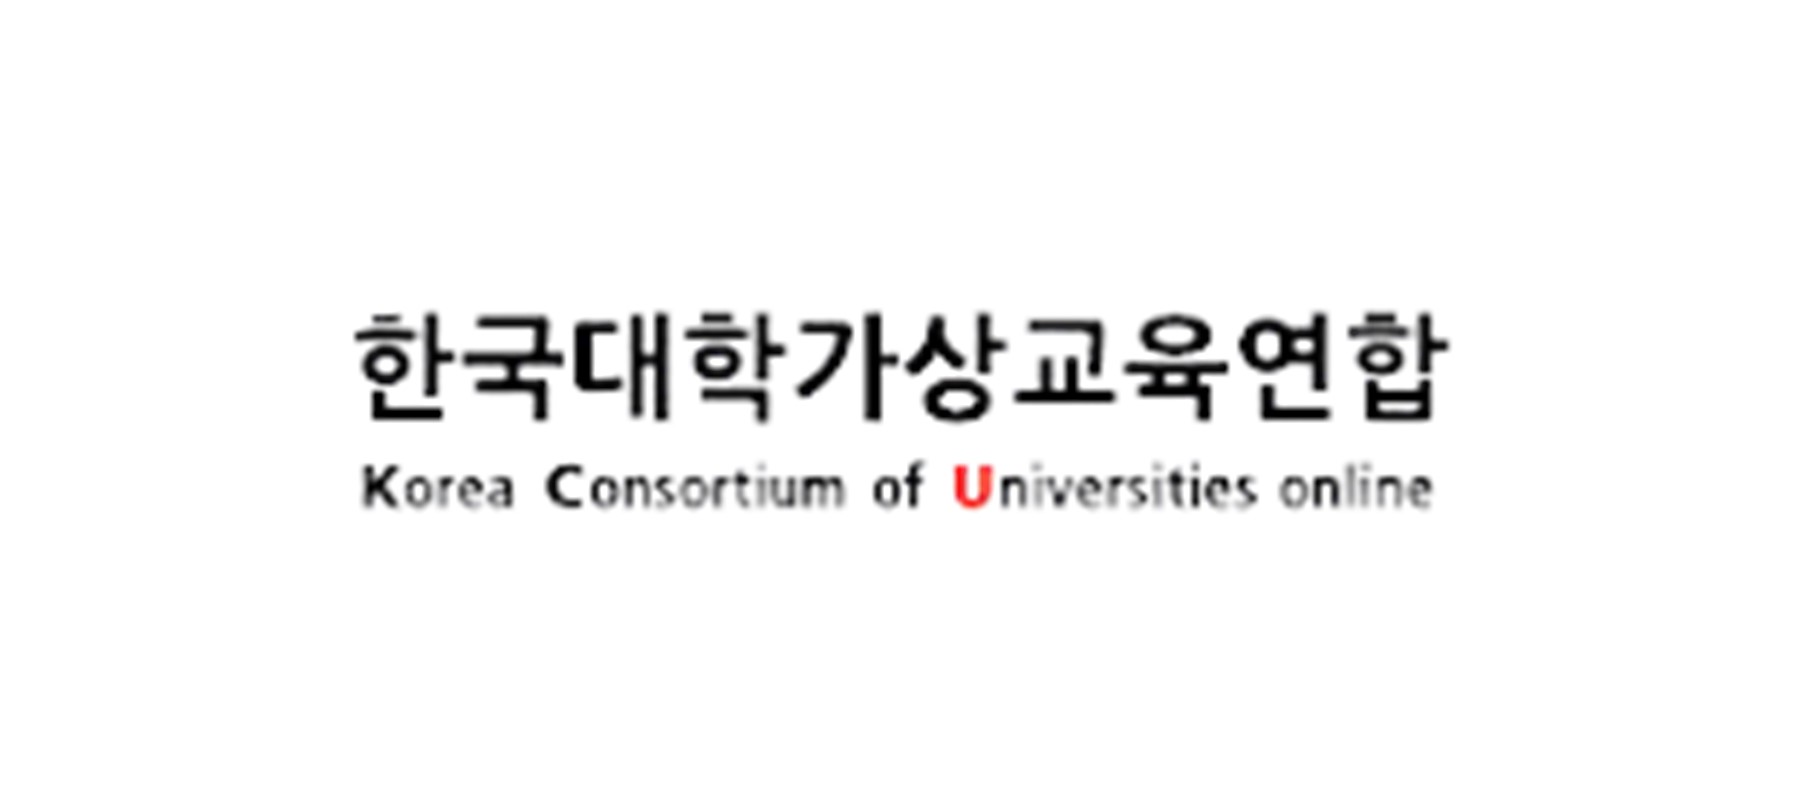 39. 한국대학가상교육연합